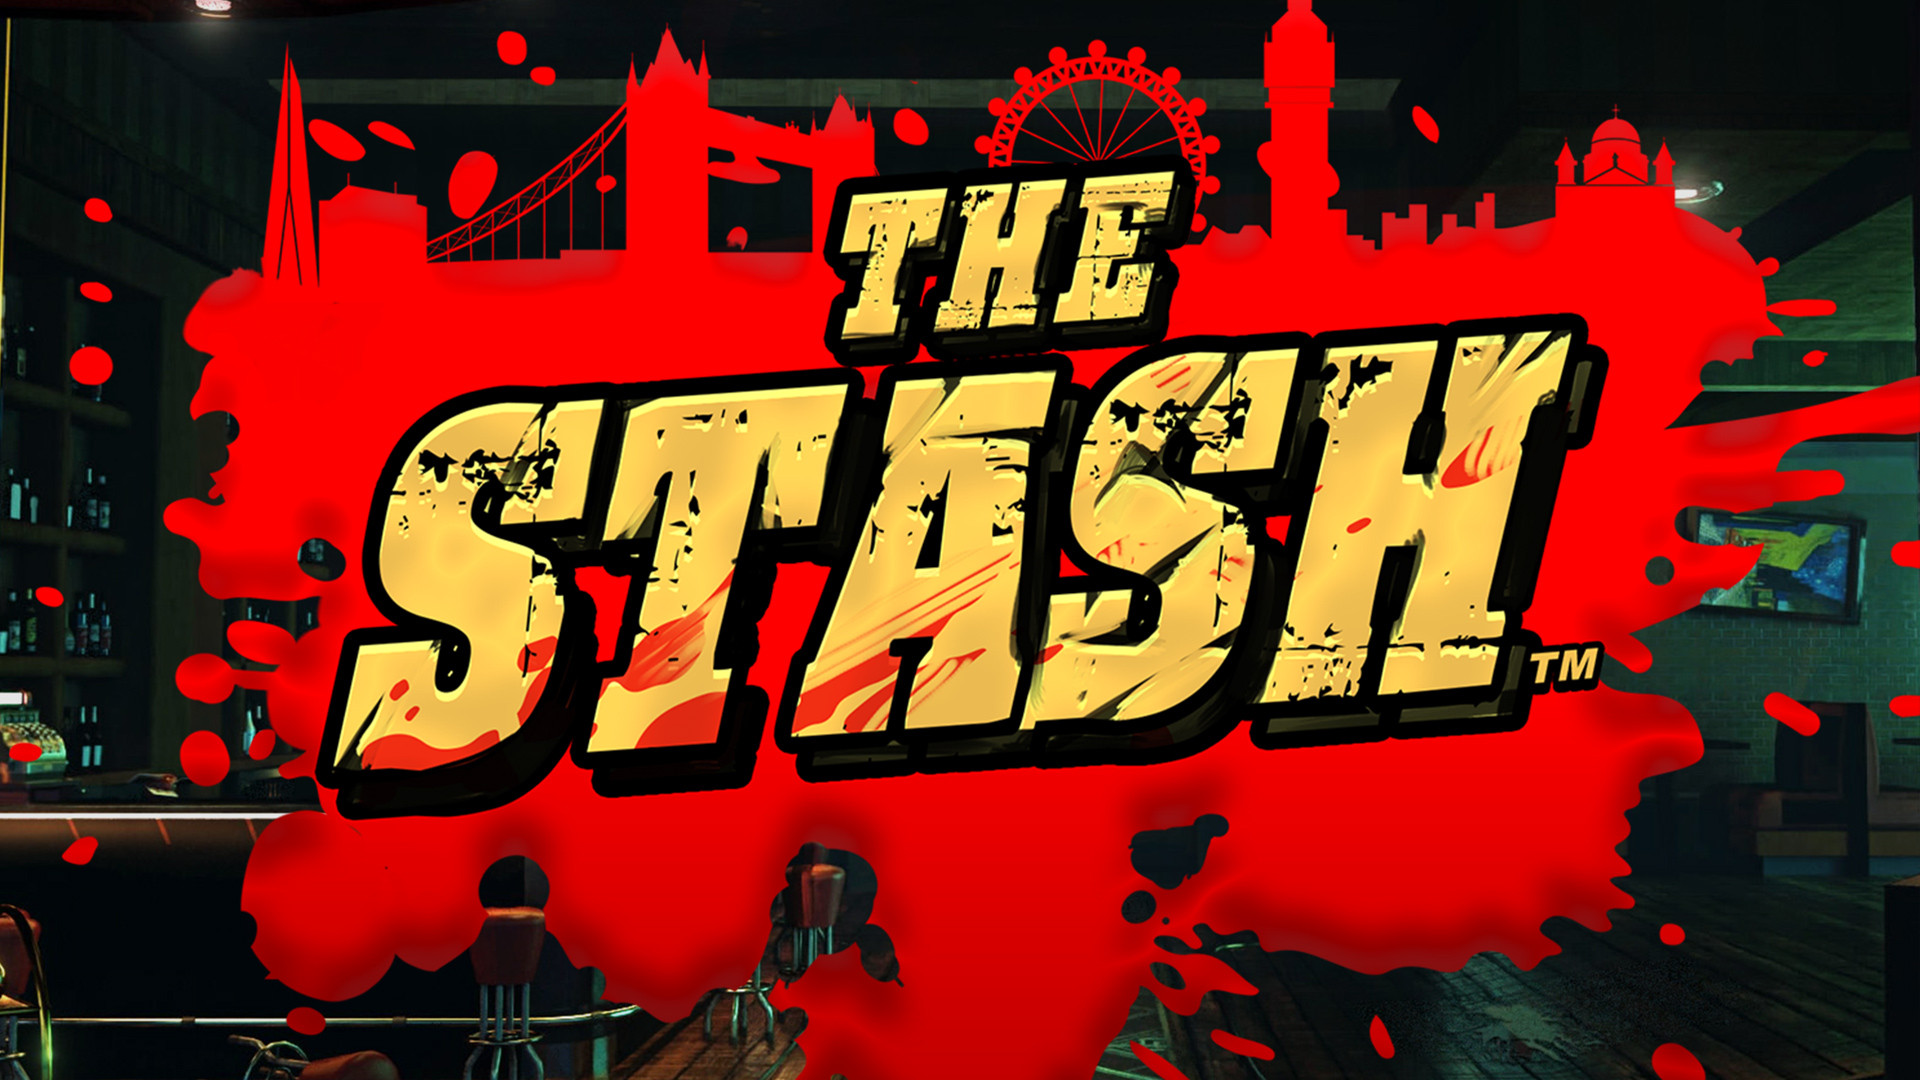 The Stash